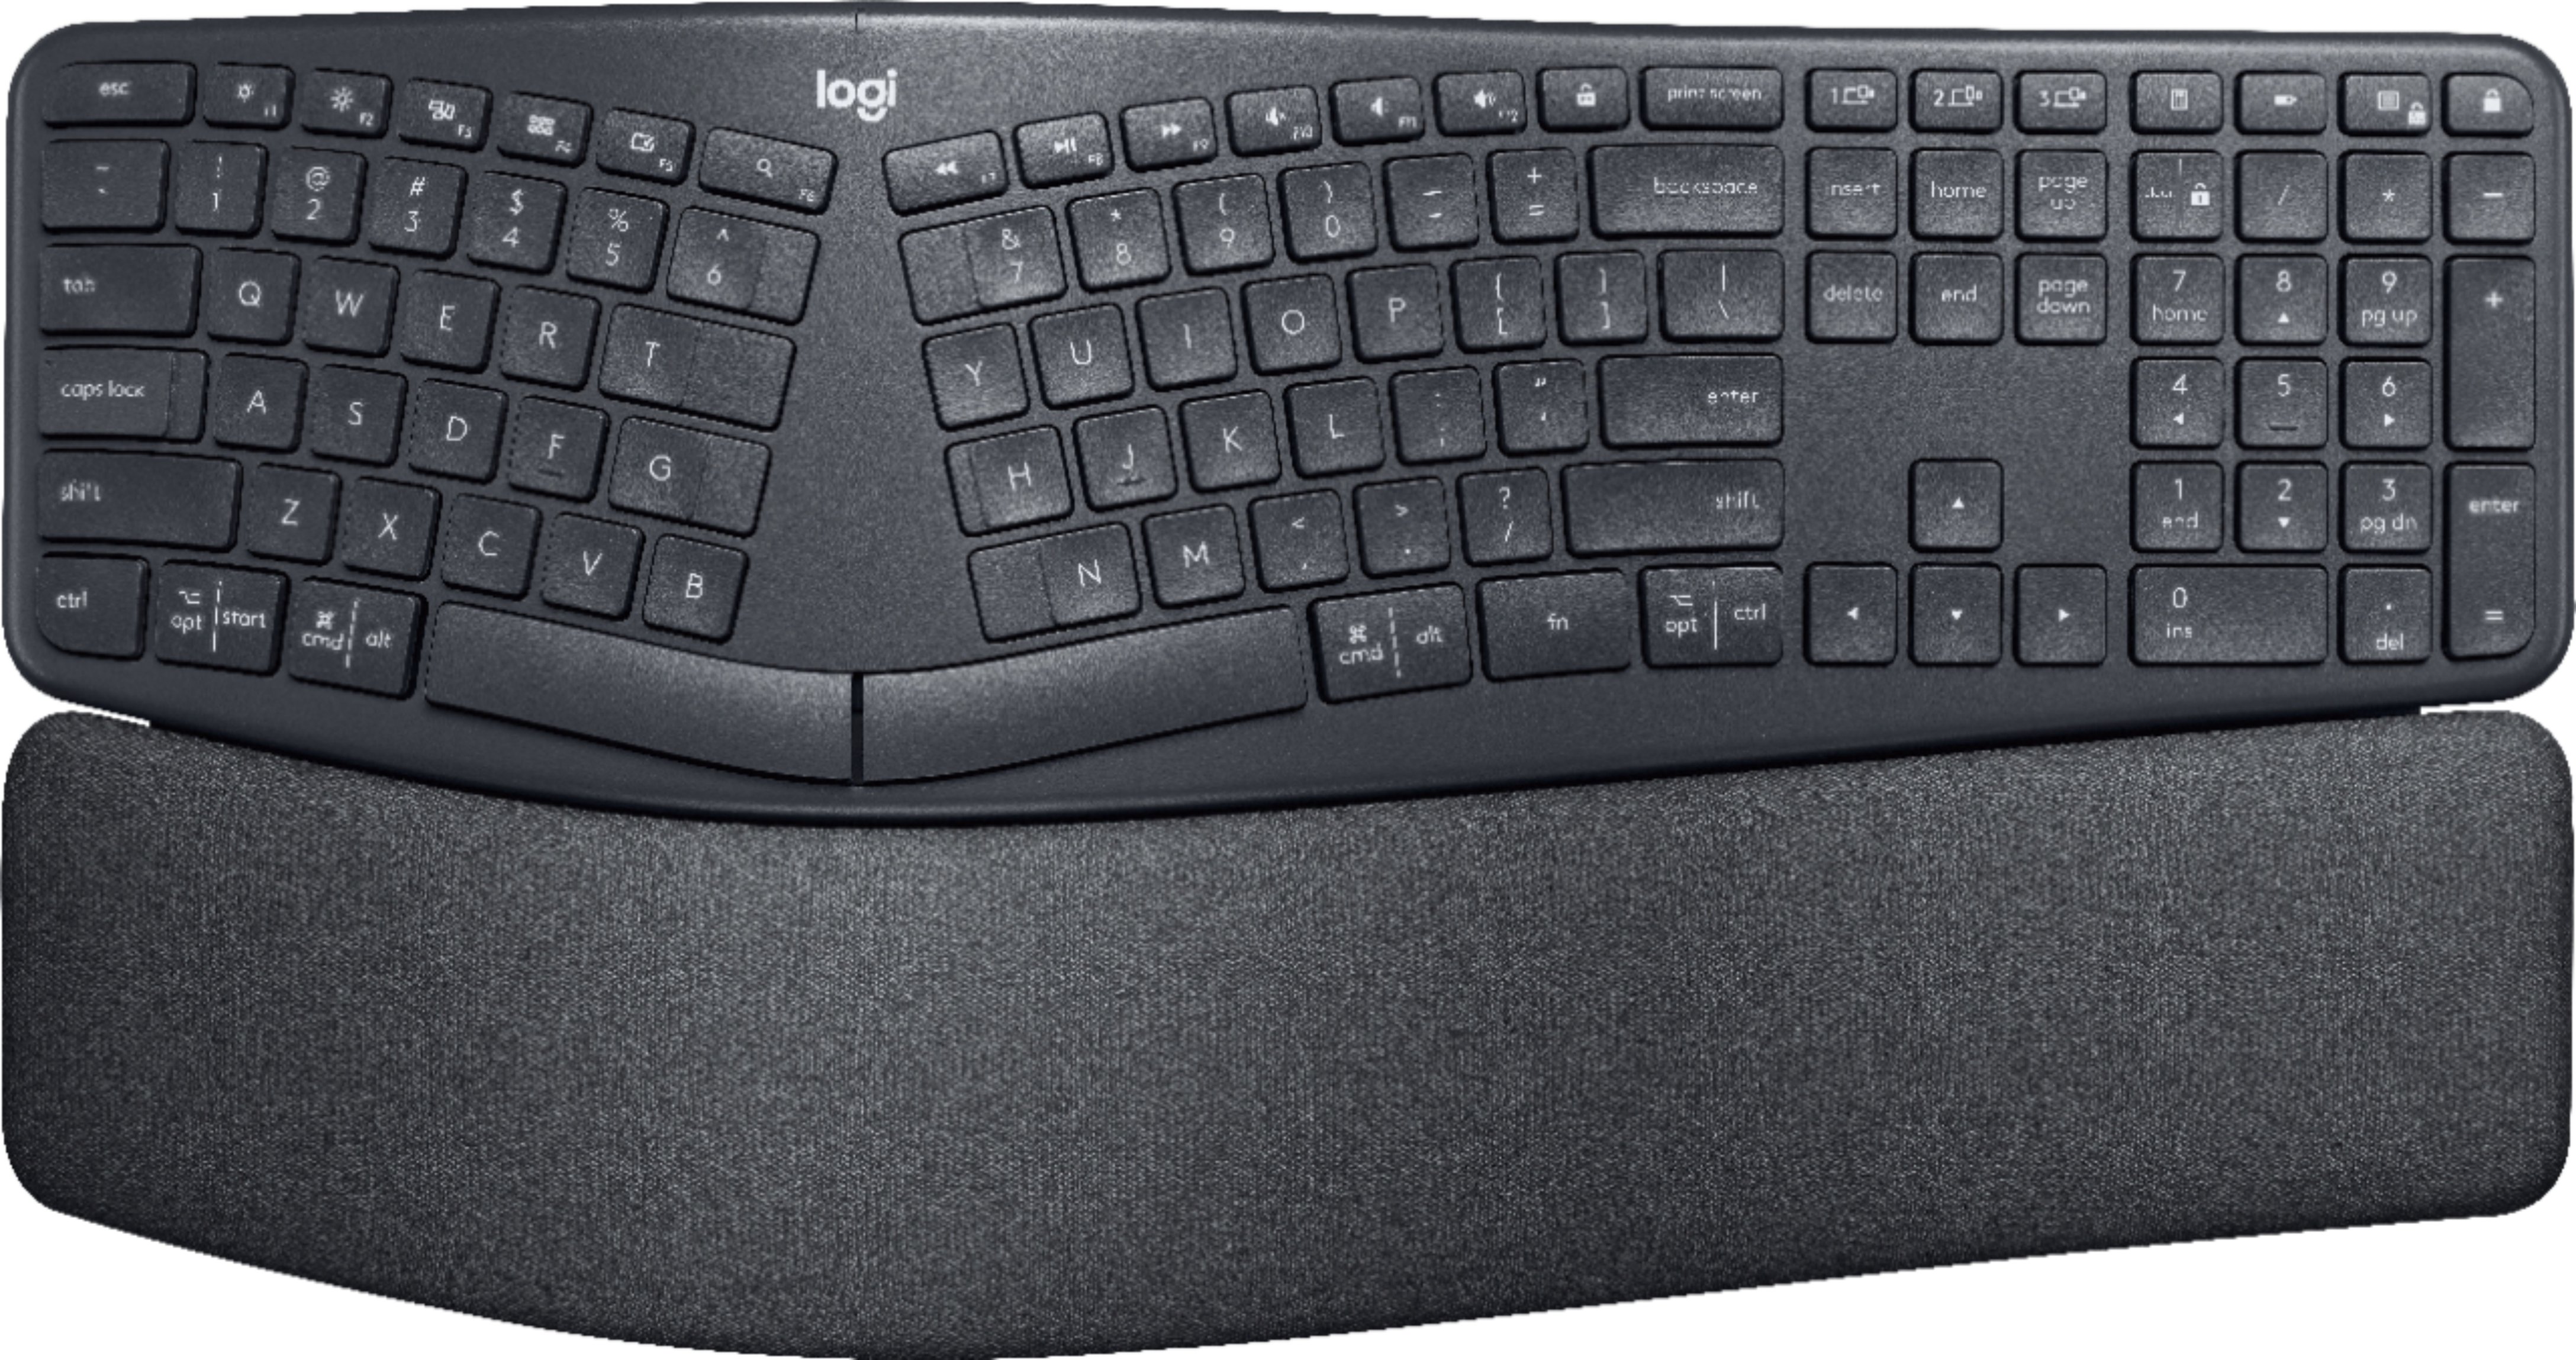 Logitech - ERGO K860 Ergonomic Full-size Wireless Scissor Keyboard for Windows and Mac with Palm Rest - Black